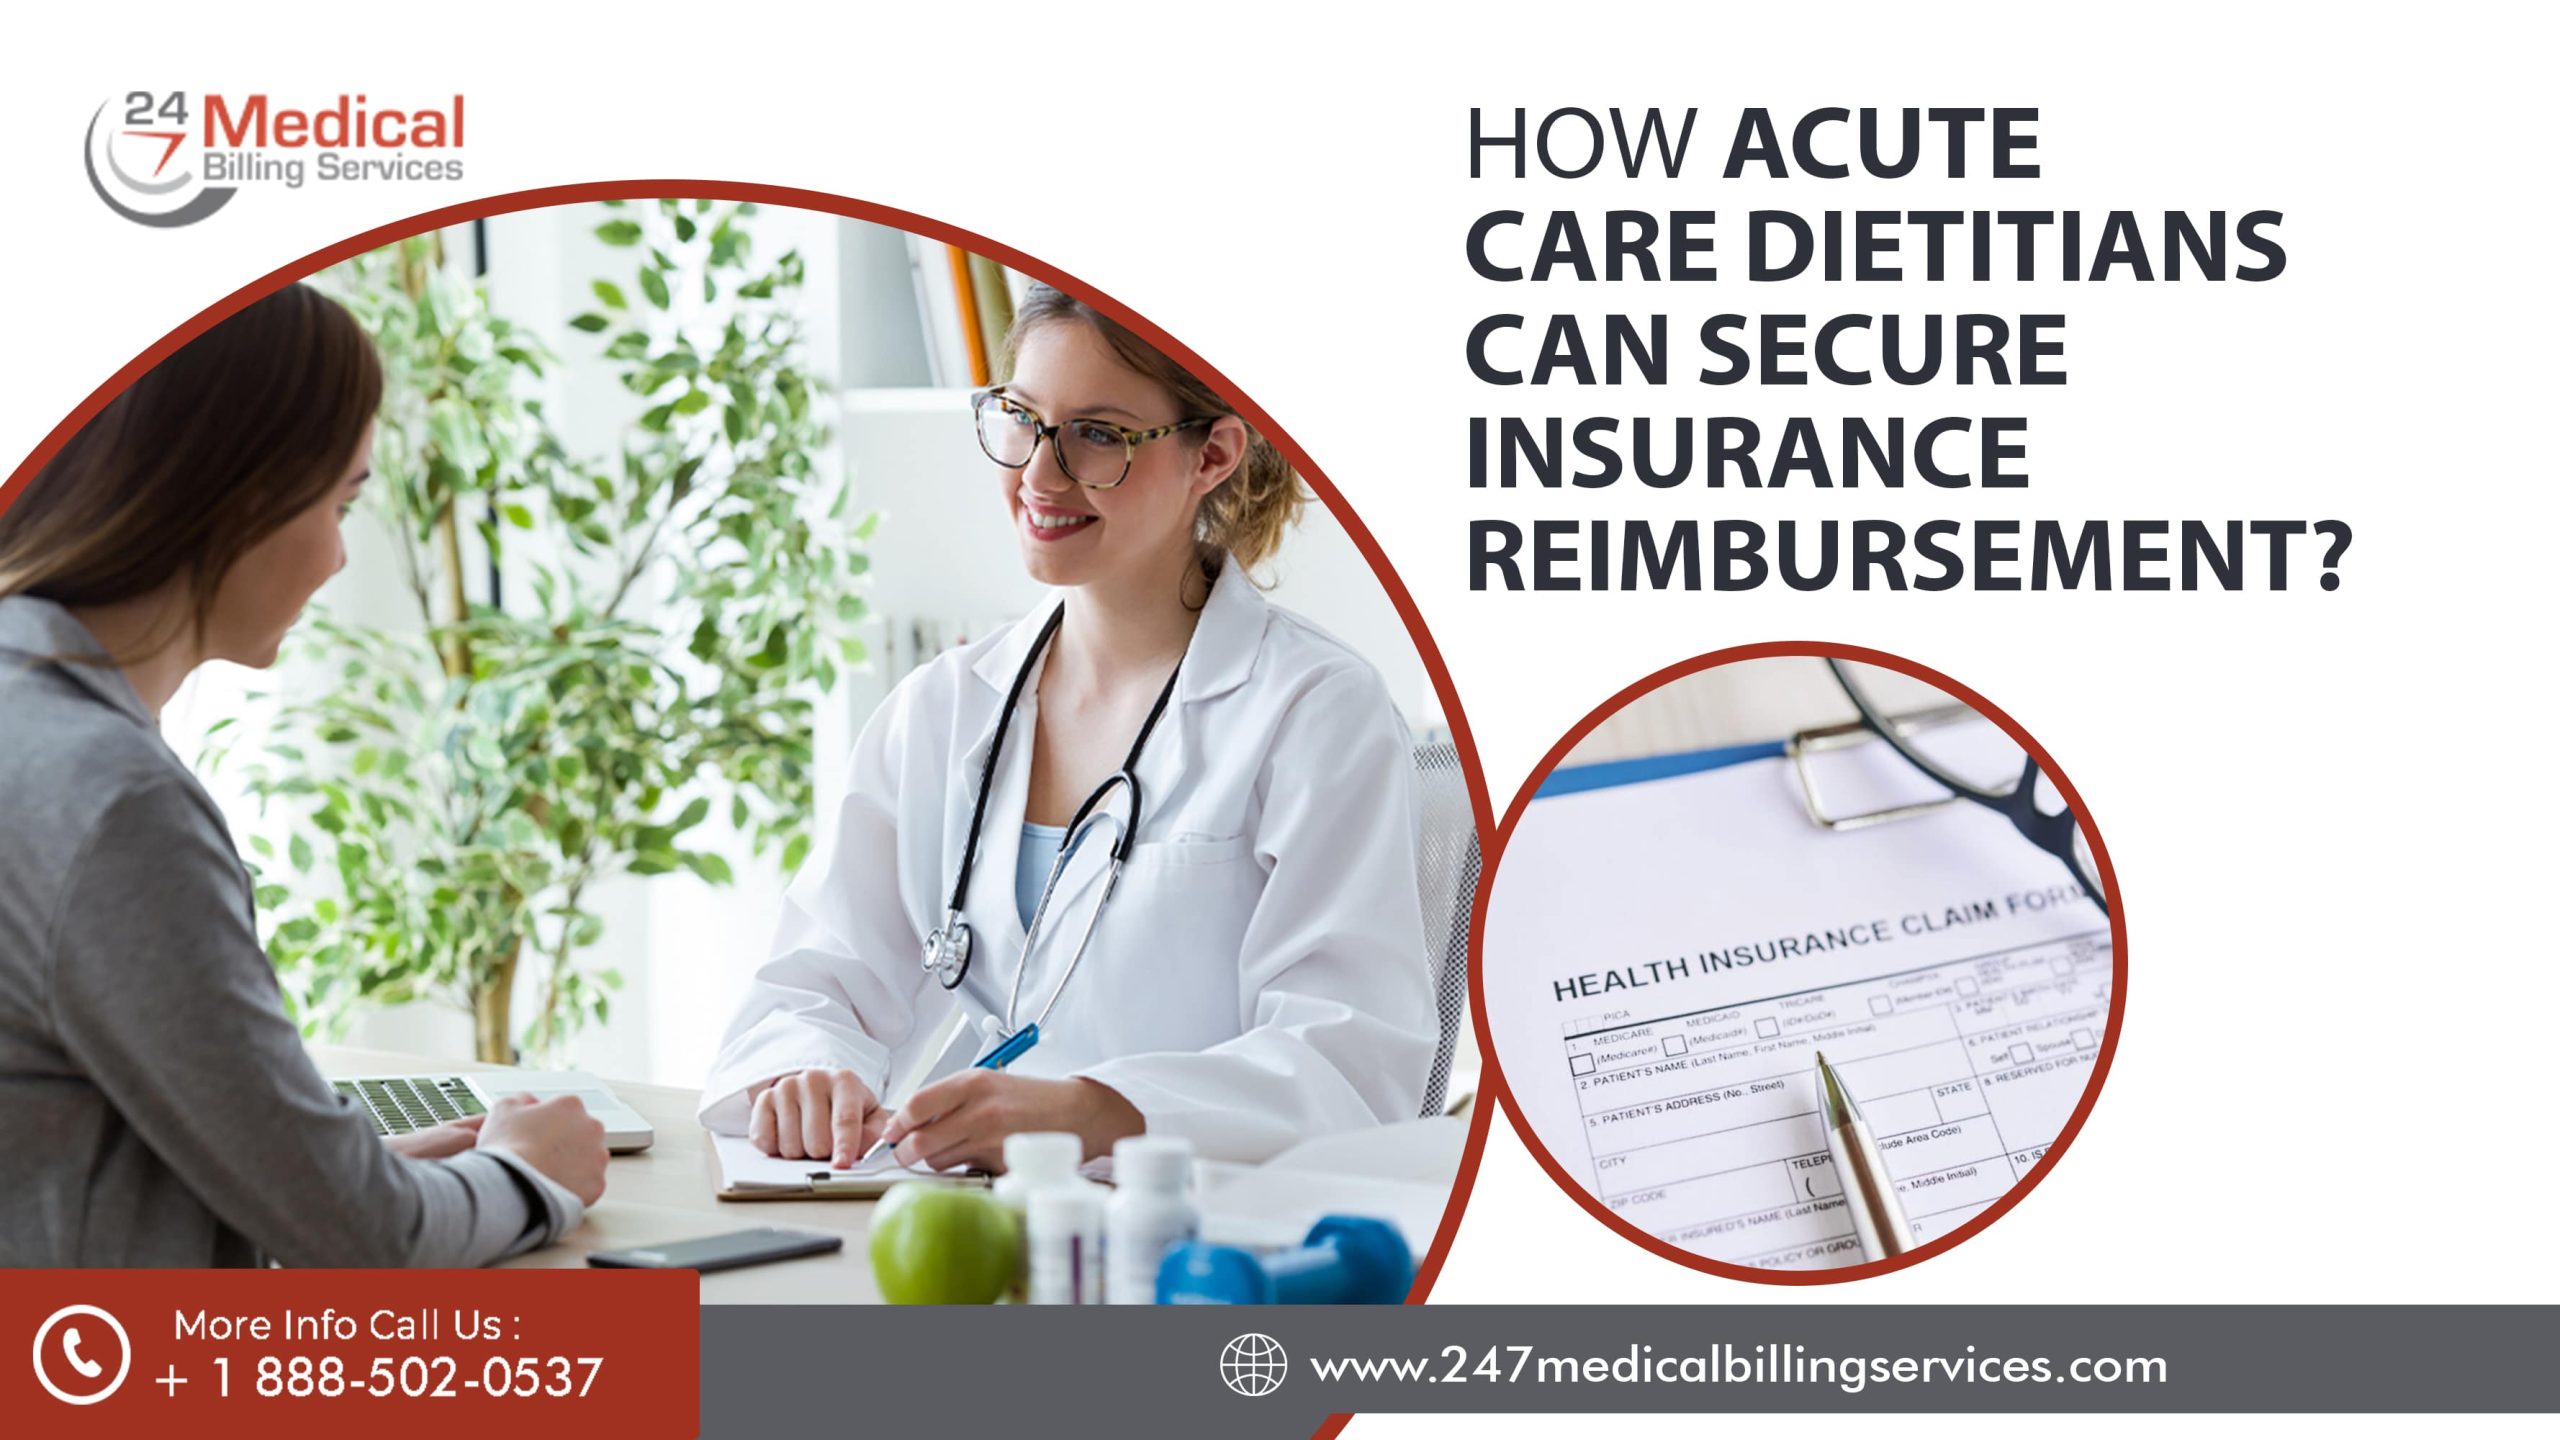  How Can Acute Care Dietitians Secure Insurance Reimbursement?